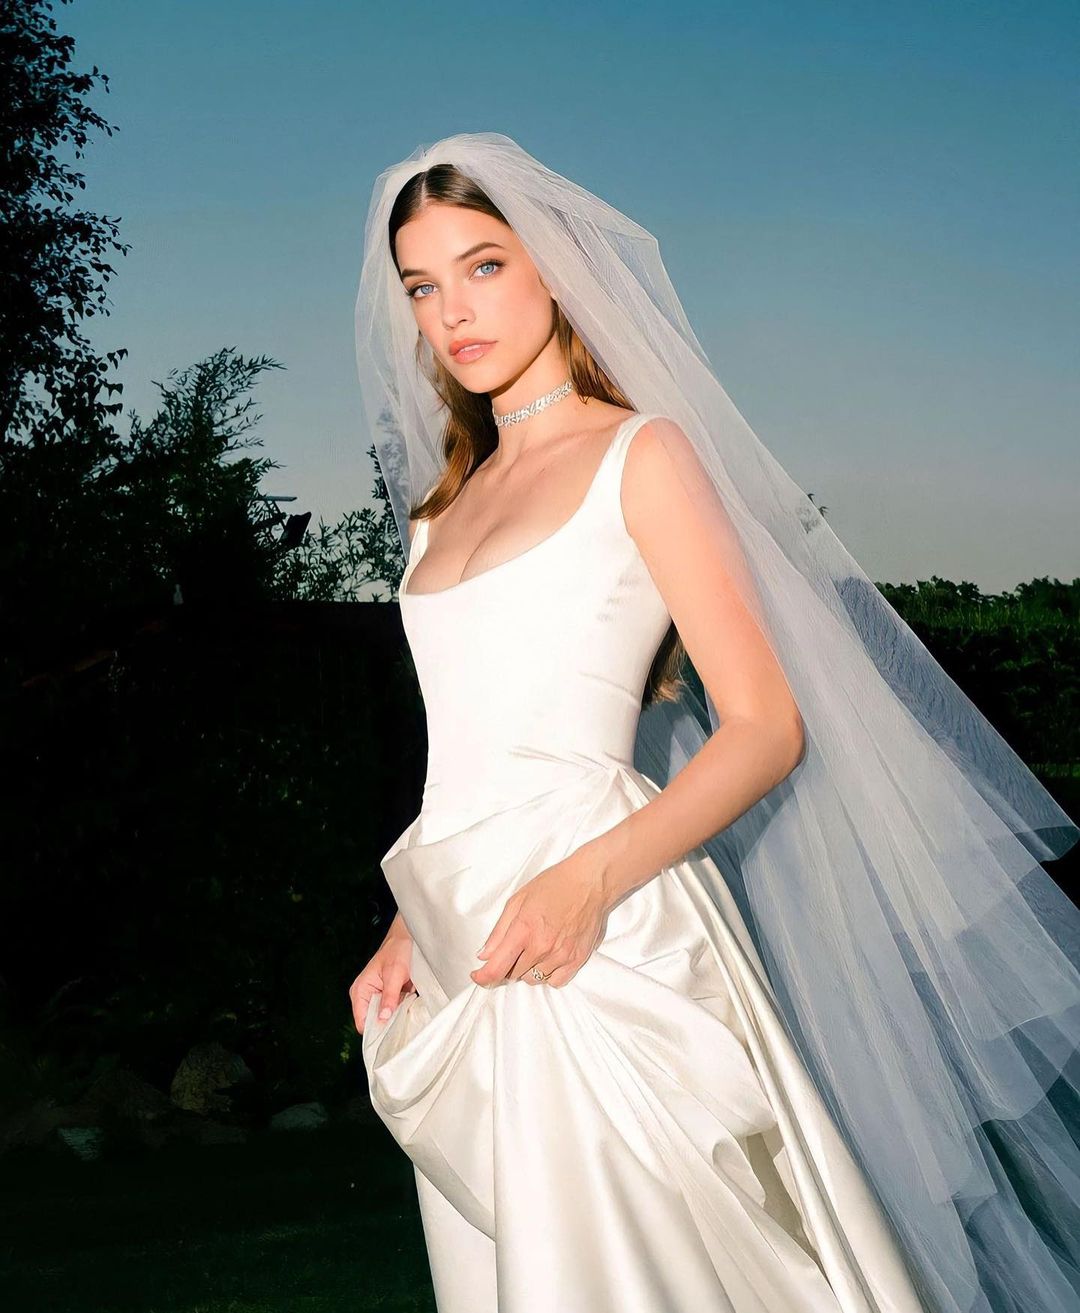 barbara diện màn voan cùng váy cưới trắng